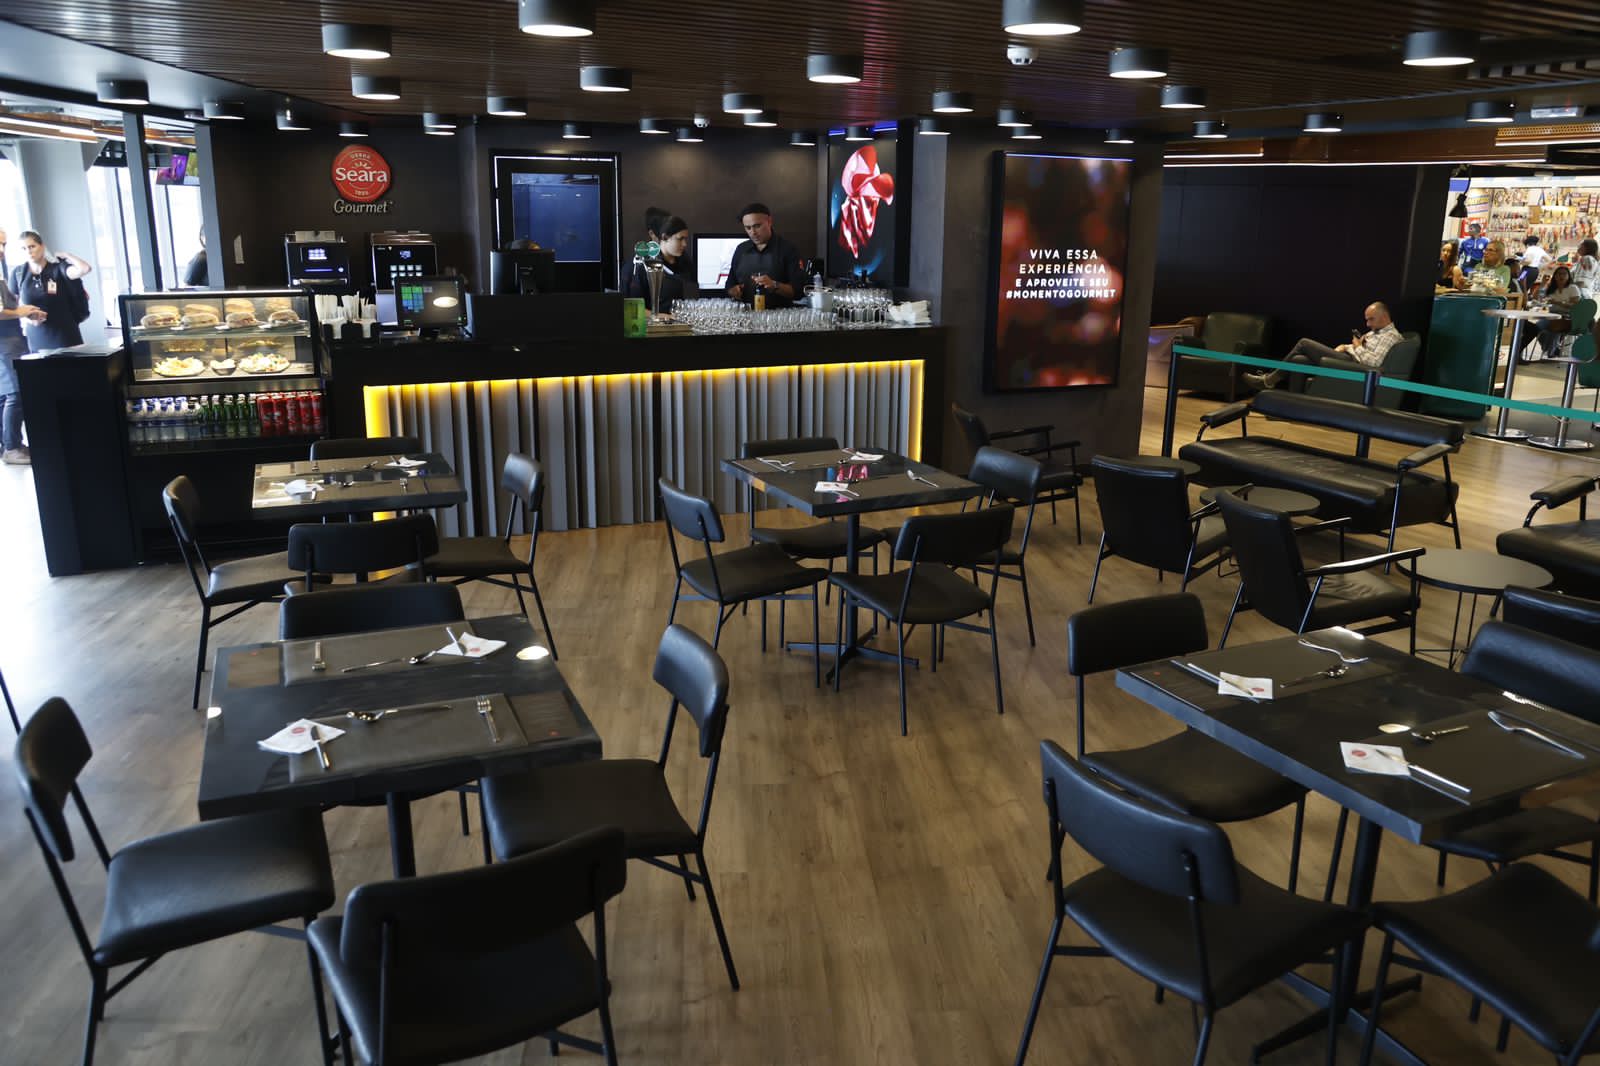 Seara Gourmet inaugura restaurante próprio no Aeroporto de Guarulhos - Imagem: Rafa Von Zuben/Divulgação